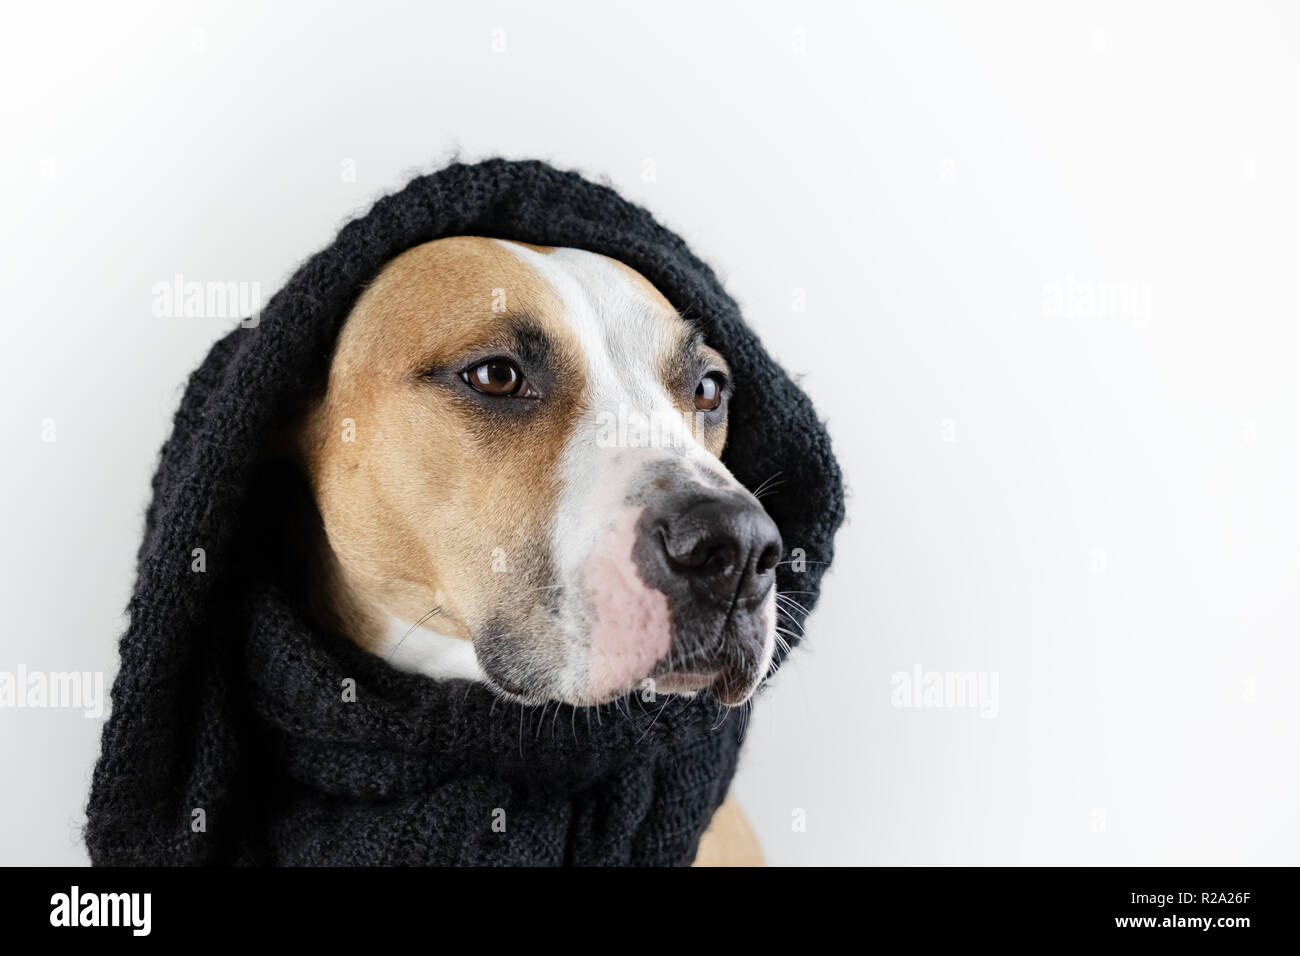 Süßer Hund in warme Kleidung Konzept. Schöne Staffordshire Terrier Welpen in schwarz Schal im Studio Hintergrund Stockfoto